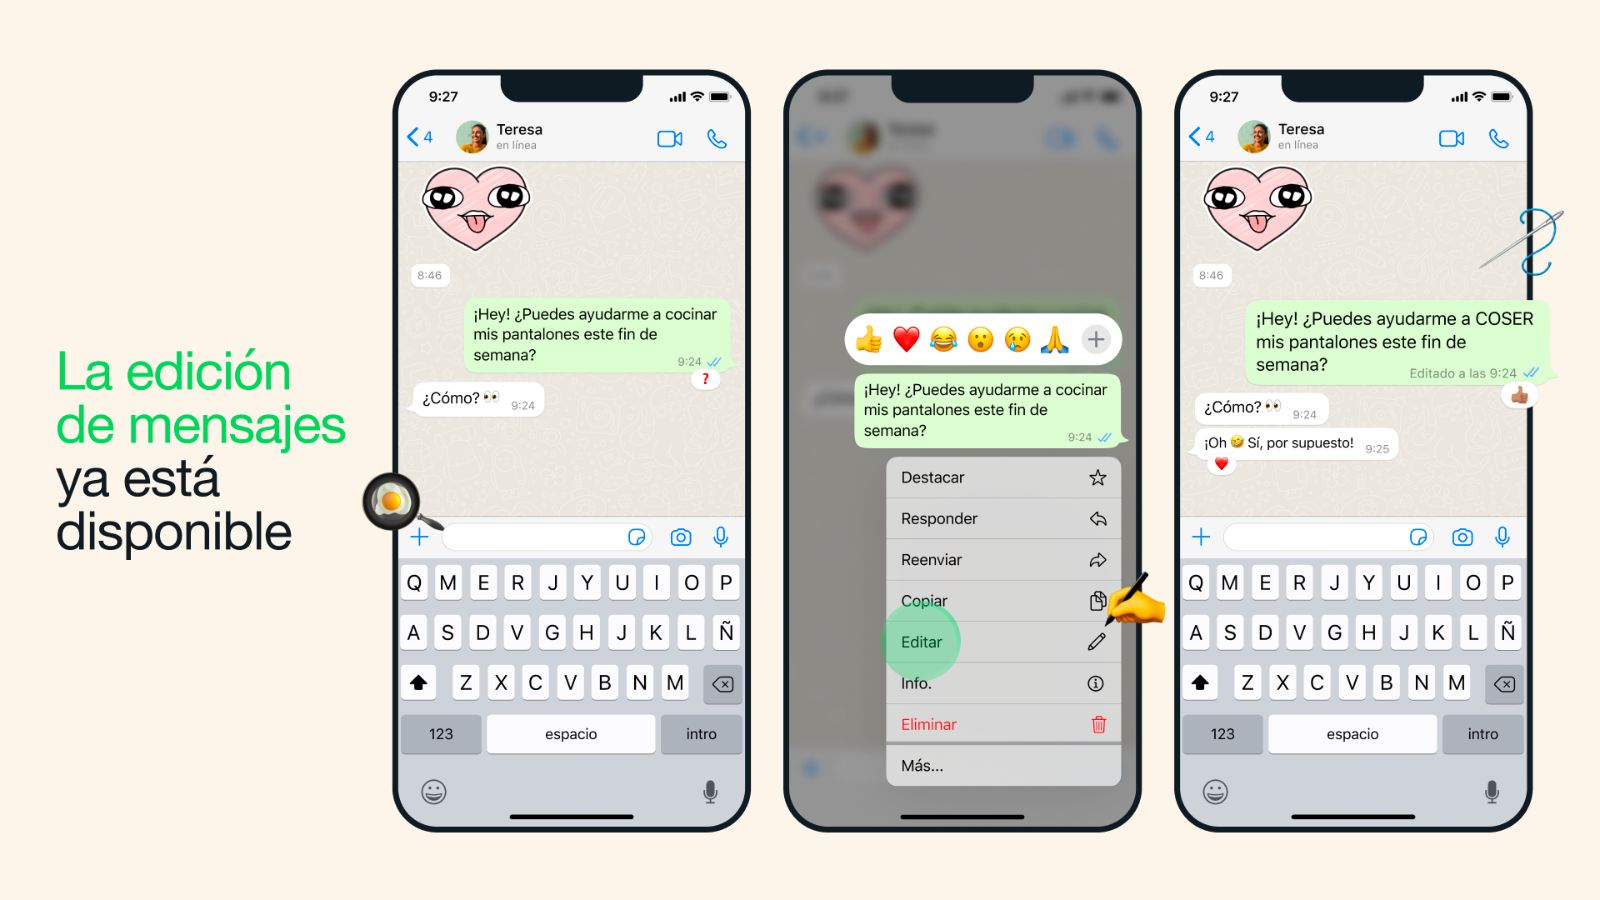 WhatsApp- Ahora puedes editar mensajes 15 minutos después de enviarlos